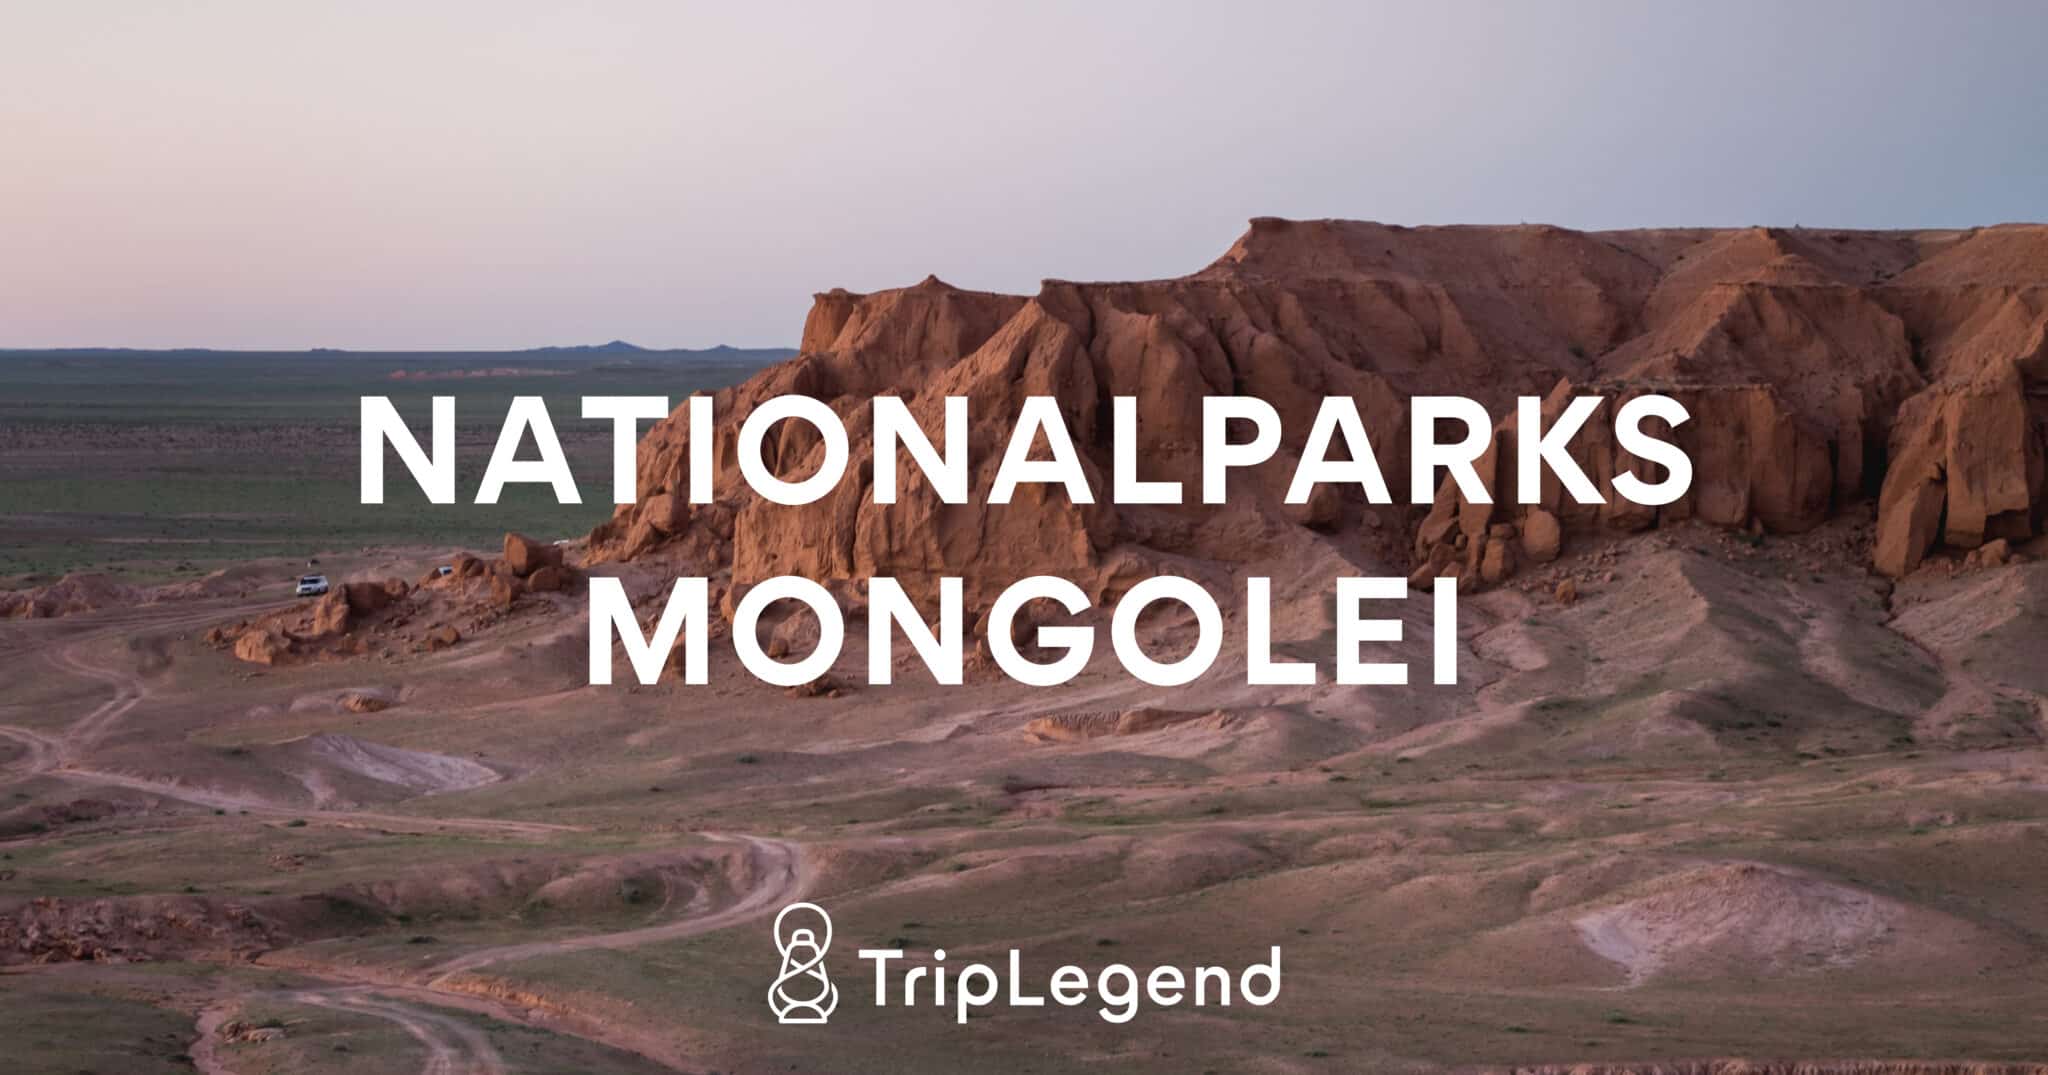 Imagen principal del artículo sobre los parques nacionales de Mongolia